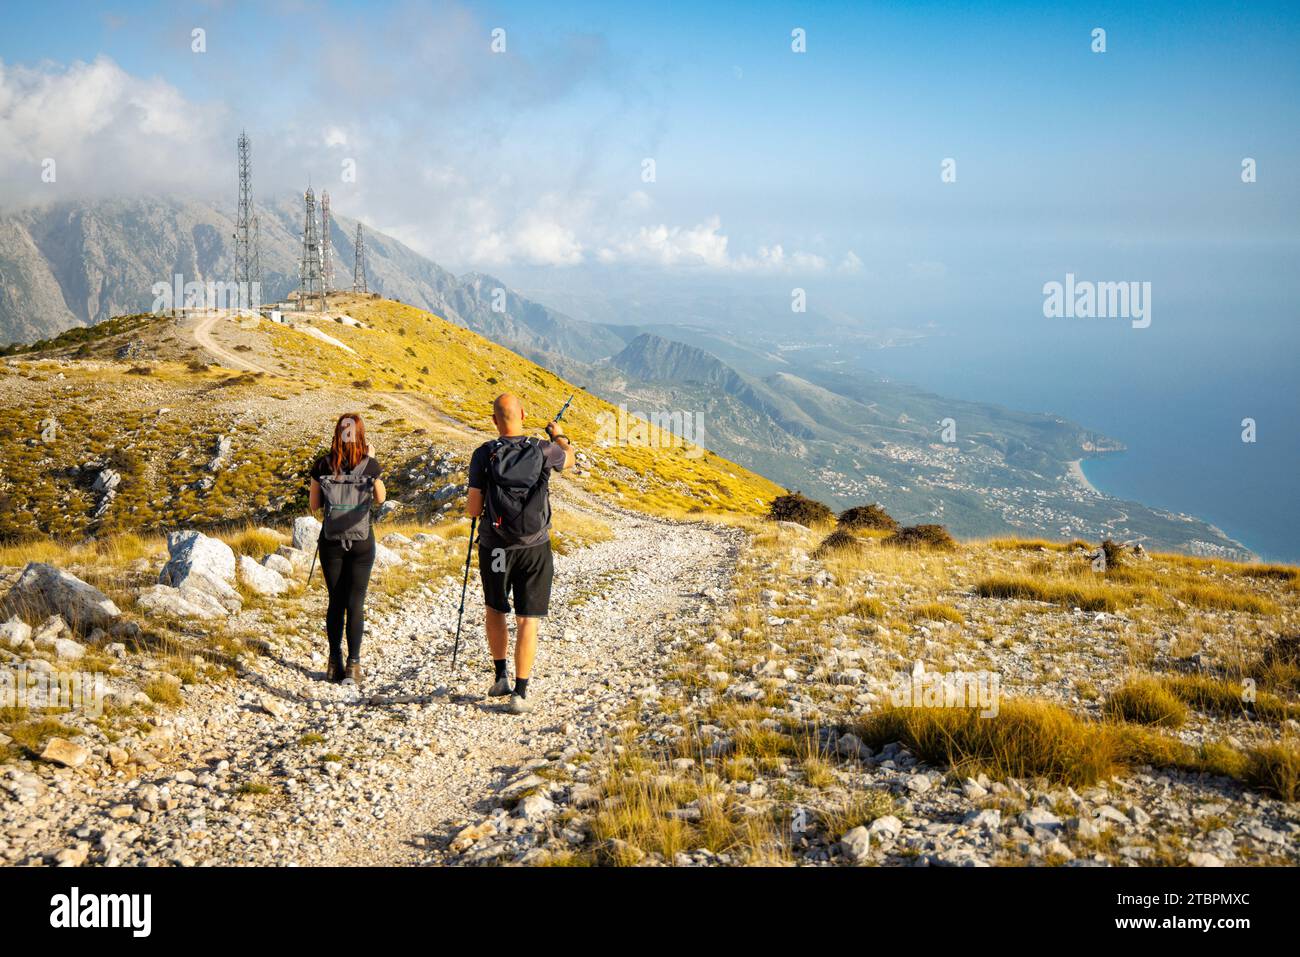 Randonneurs sur un sentier de montagne avec une vue côtière dans le sud de l'Albanie Banque D'Images